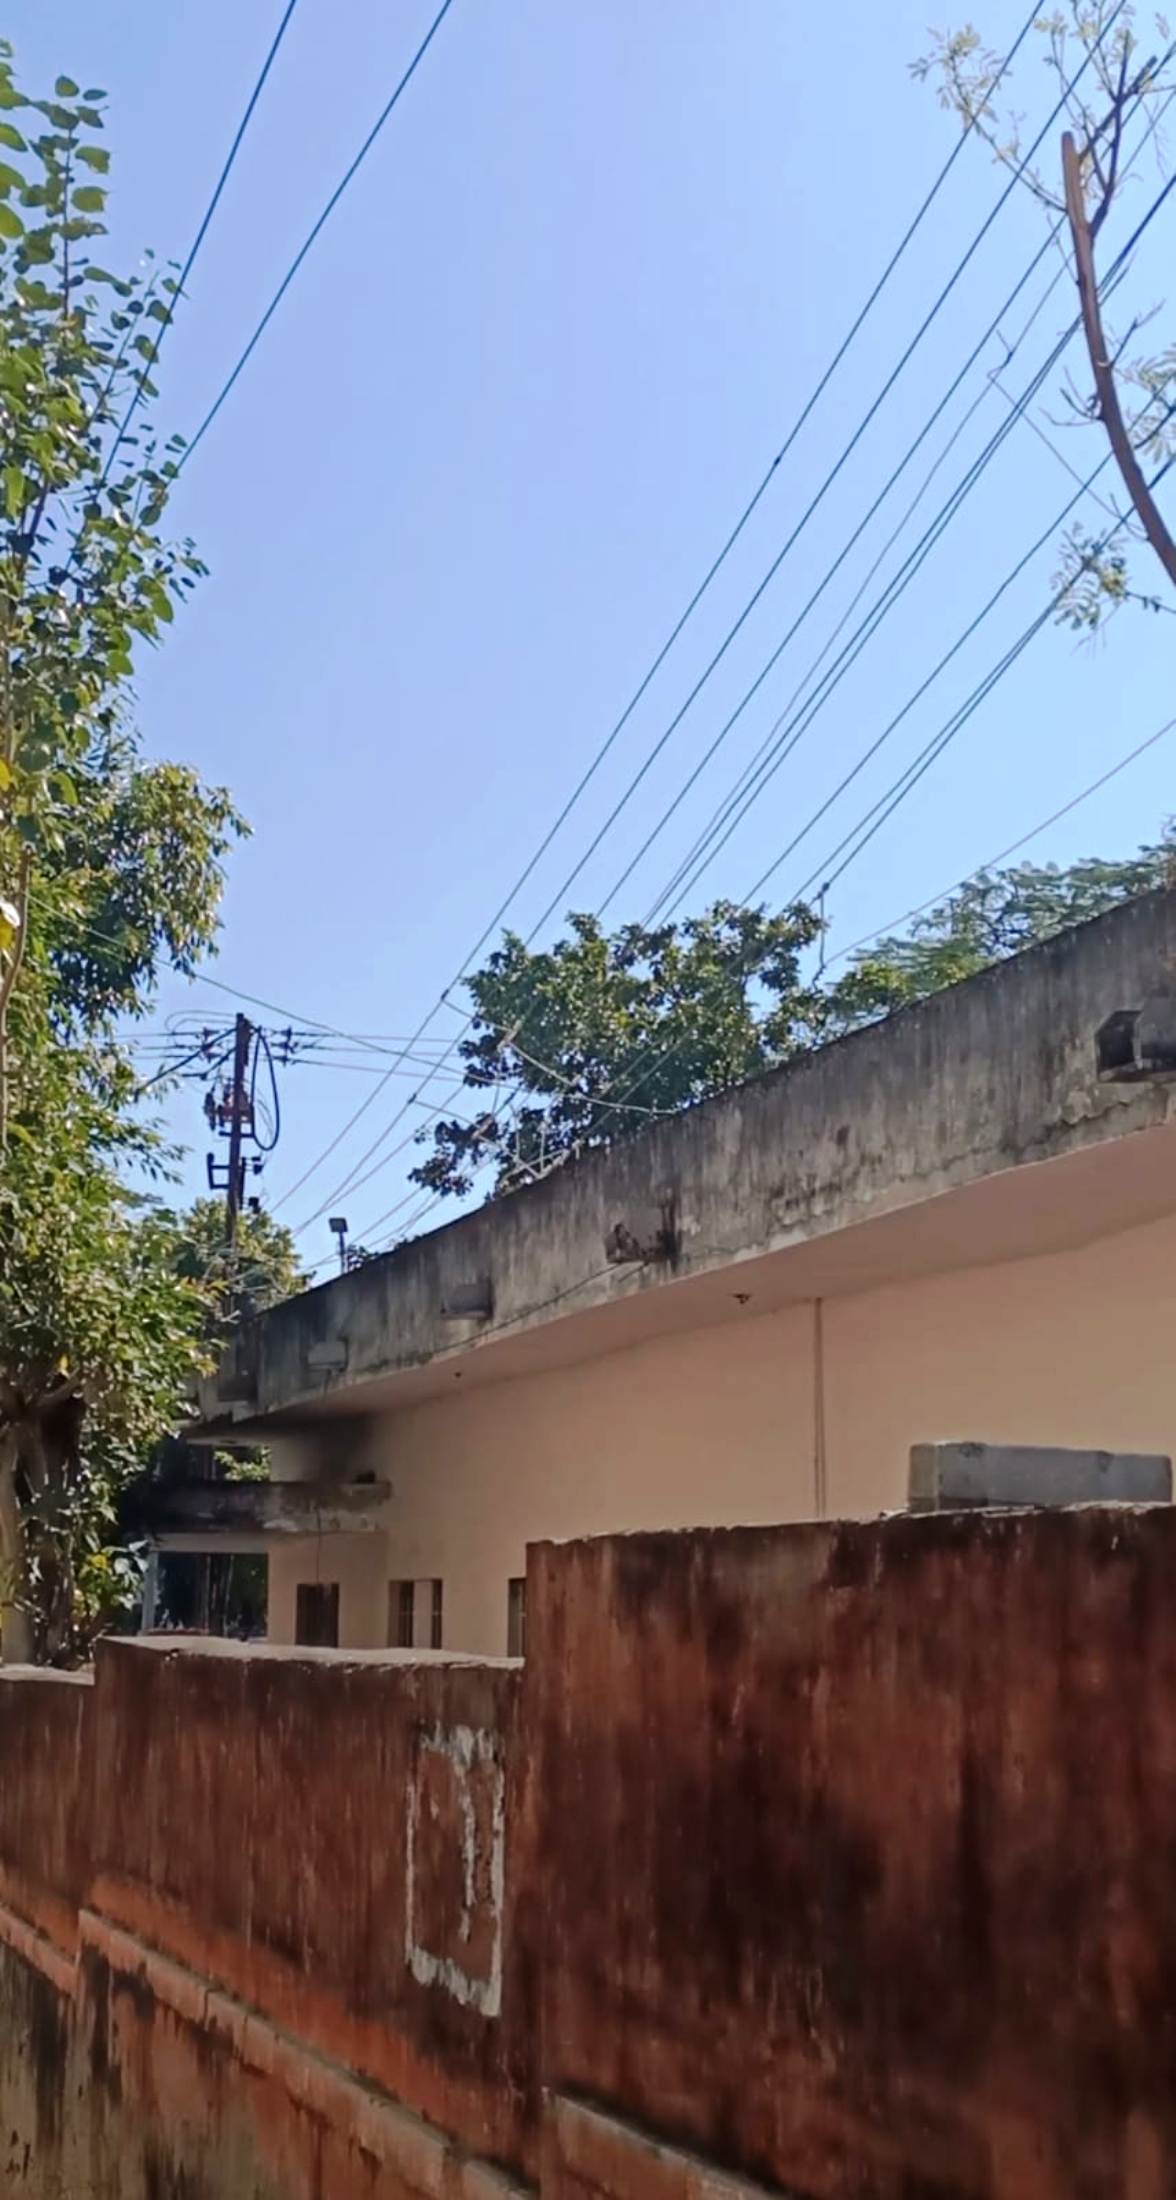 एमडी निर्वाण के निर्देशों पर सरकारी आवास के उपर से हटे बिजली के तार